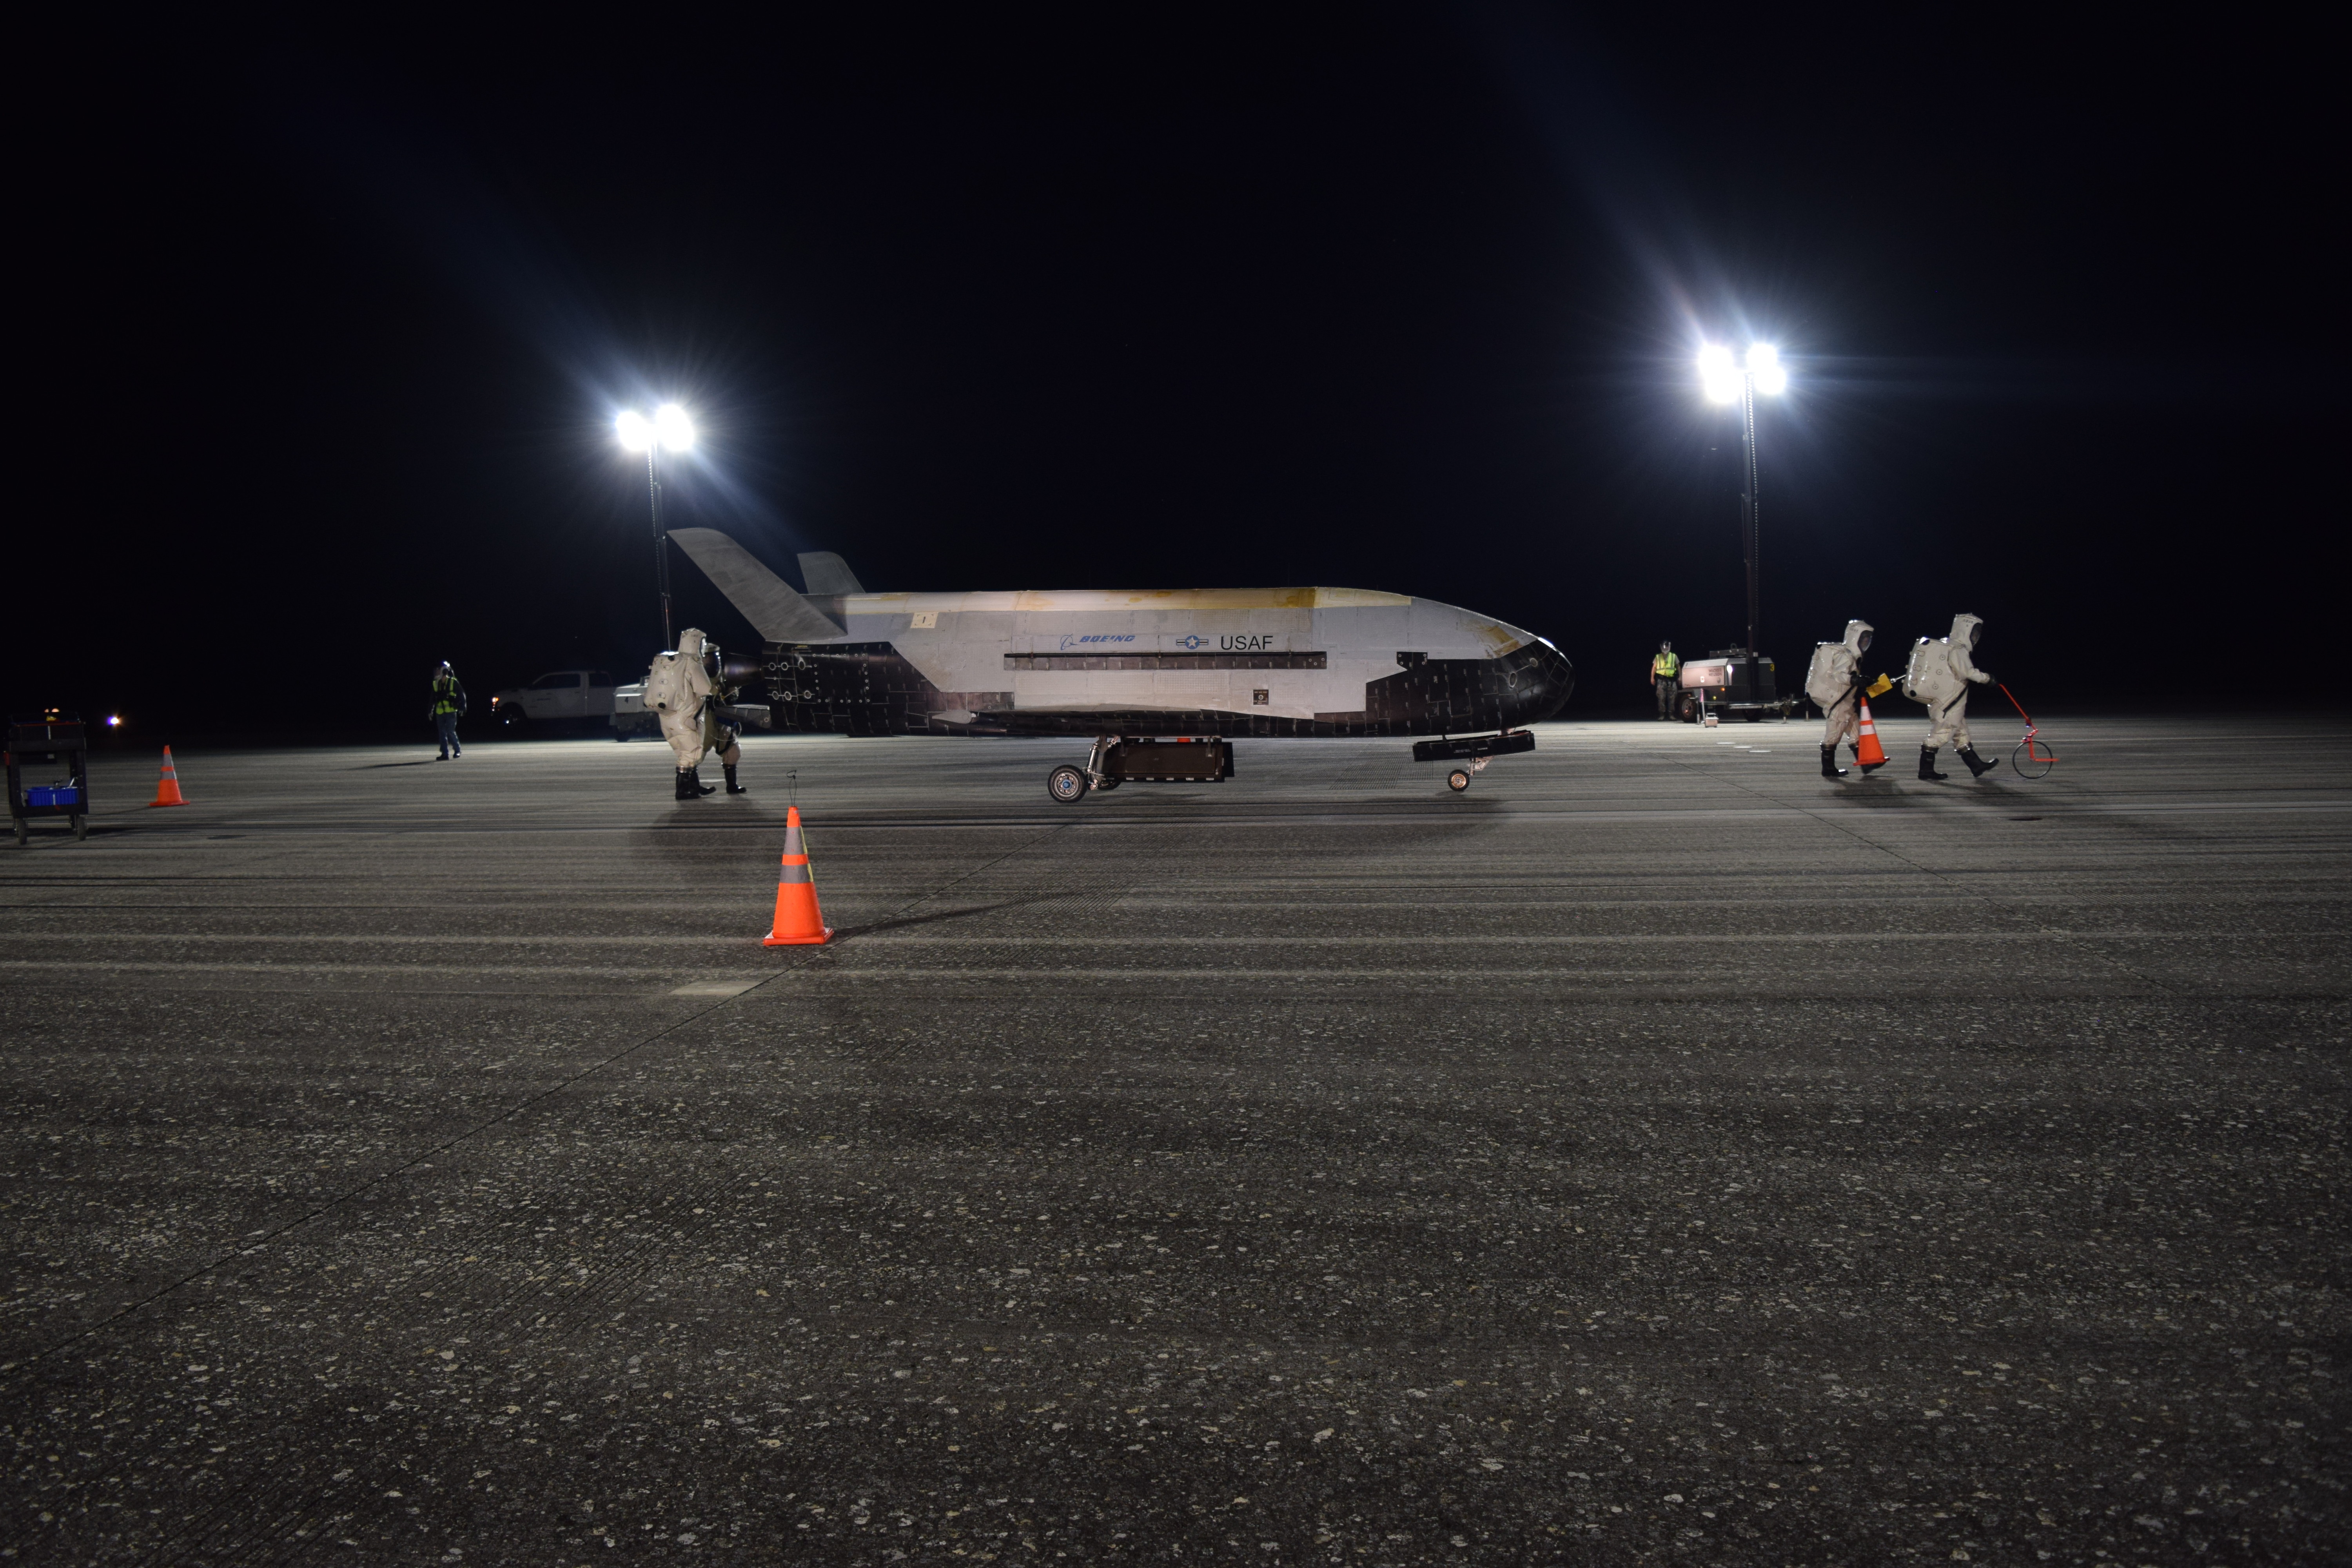 780 napos küldetése után landolt az amerikai légierő titkos űrsiklója